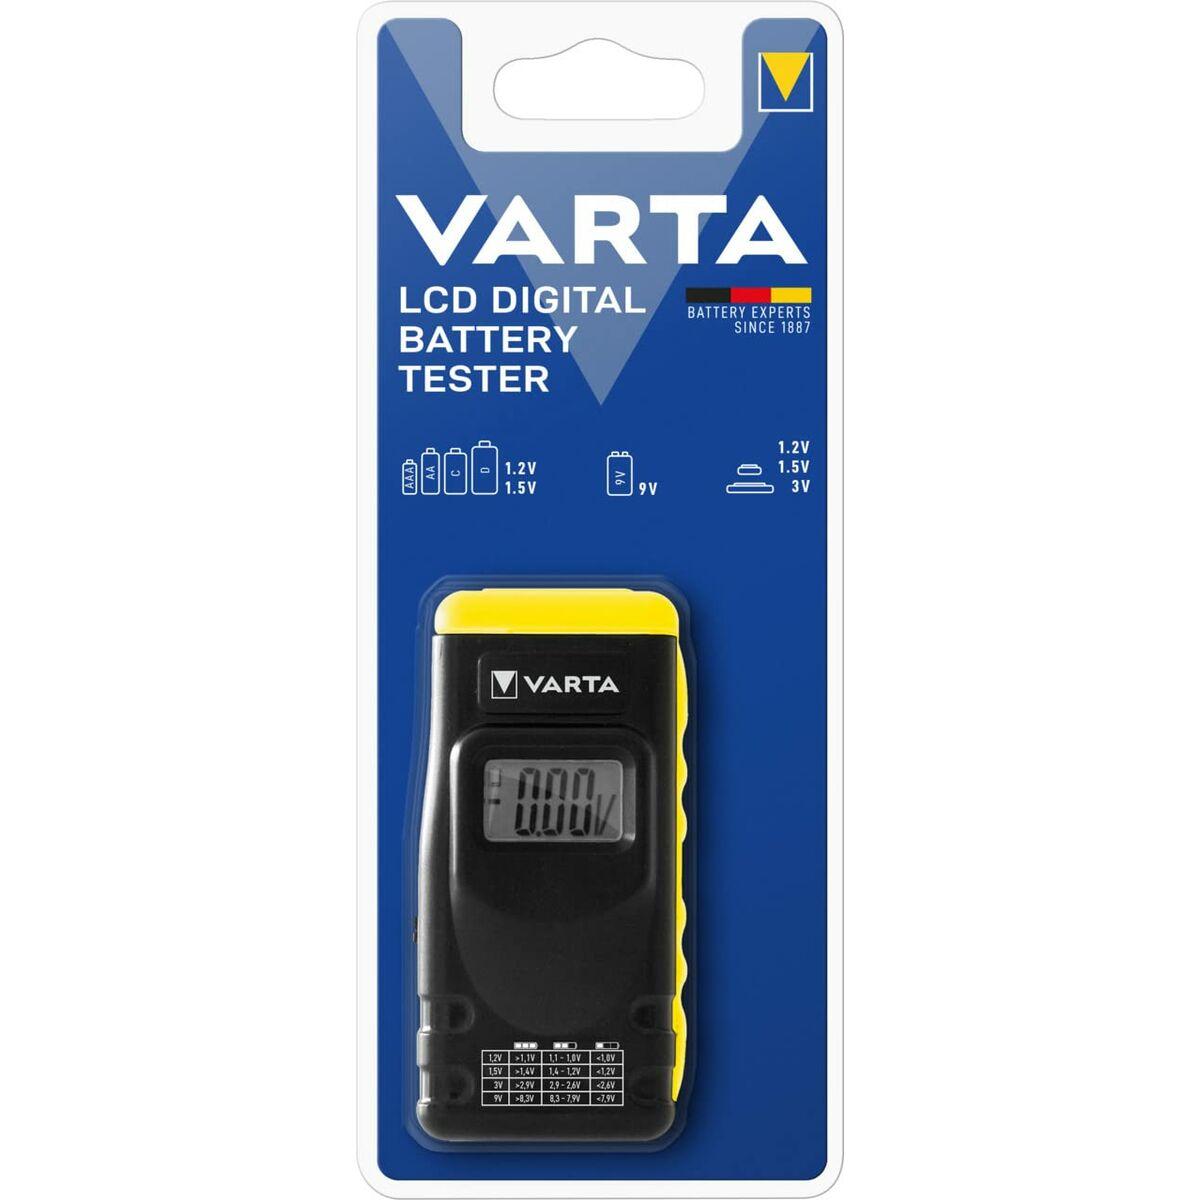 Se Varta batteritester LCD digital hos Boligcenter.dk